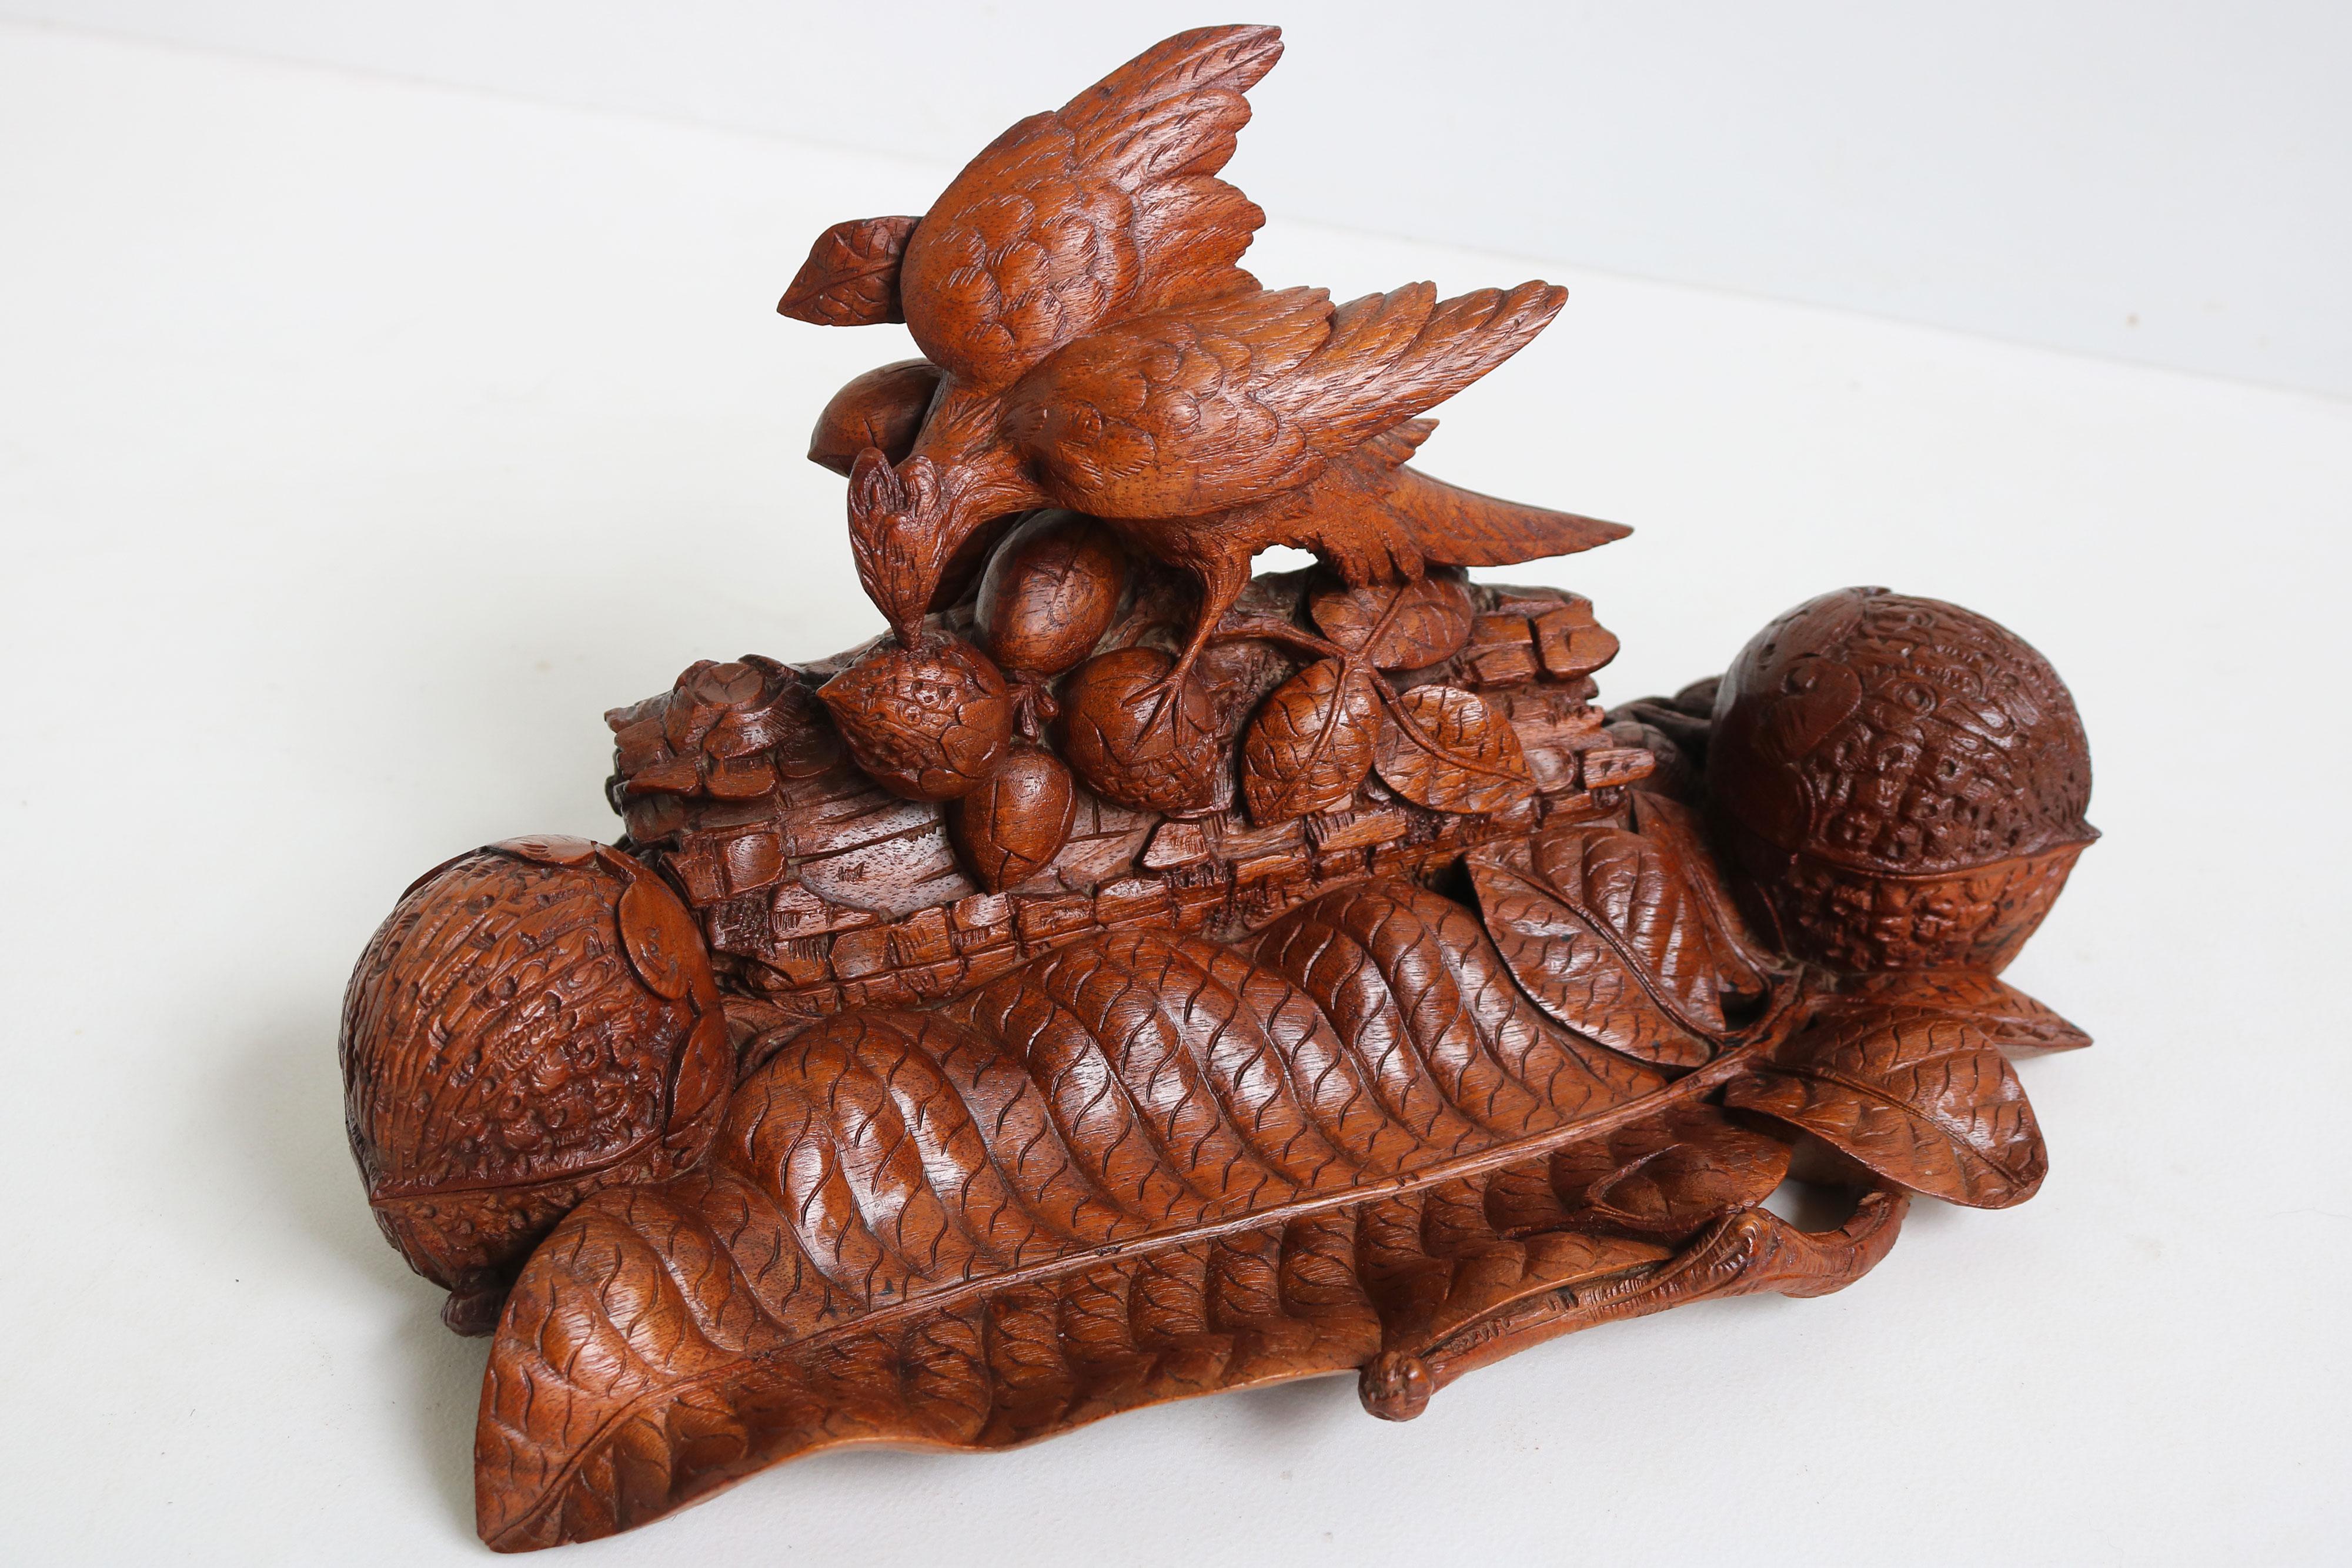 Magnifique et très rare encrier double / accessoire de bureau de la Forêt Noire suisse du 19e siècle, entièrement sculpté à la main, représentant un oiseau mangeant des noix et des feuilles florales / noix.
Sculpté par un maître sculpteur avec un